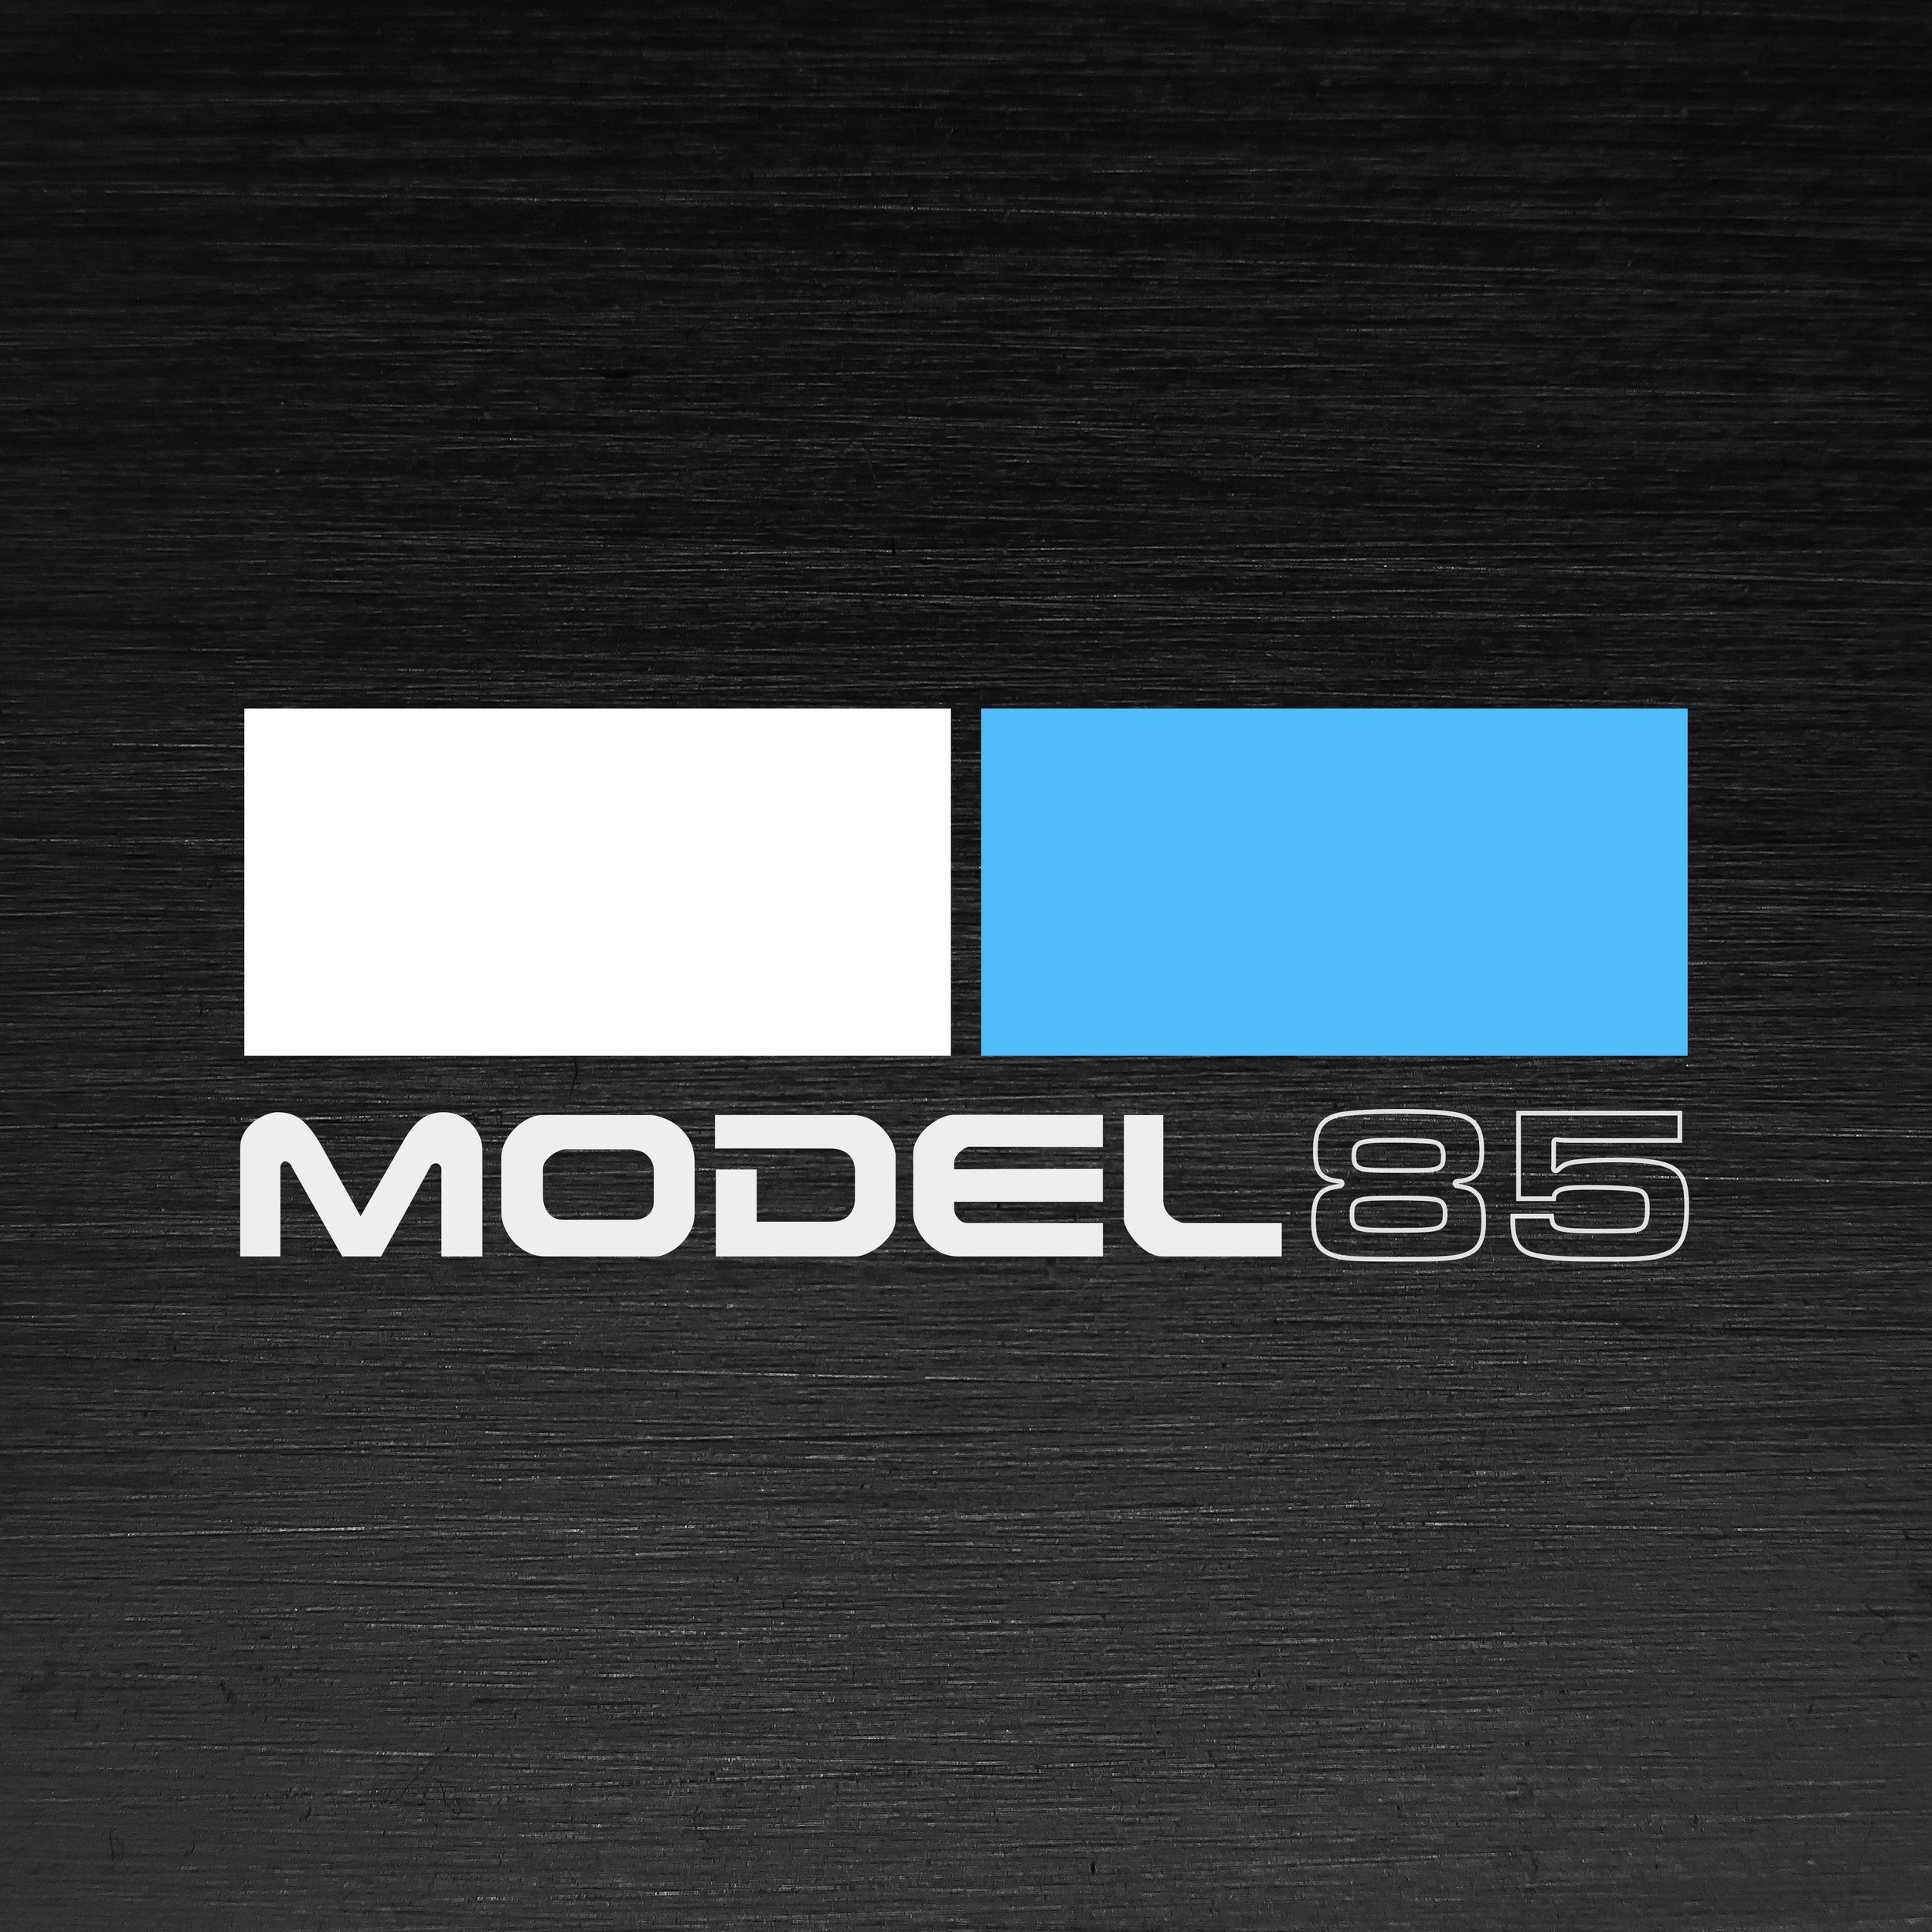 Model 85 Logo.jpg